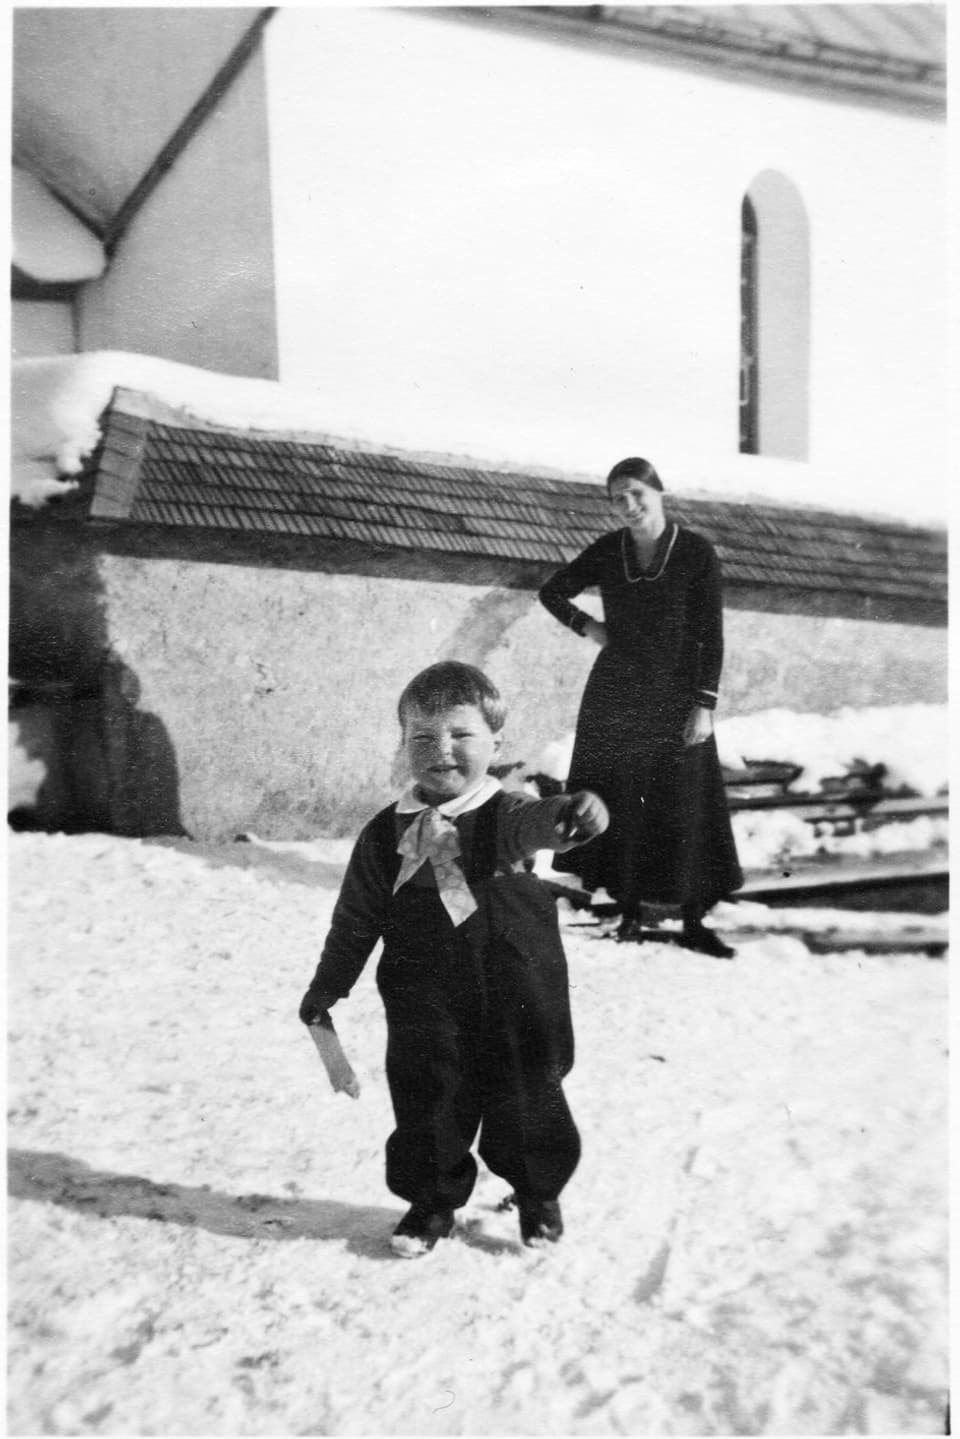 Schwarzweiss-Fotografie einer Frau und eines kleinen Kindes im Schnee.